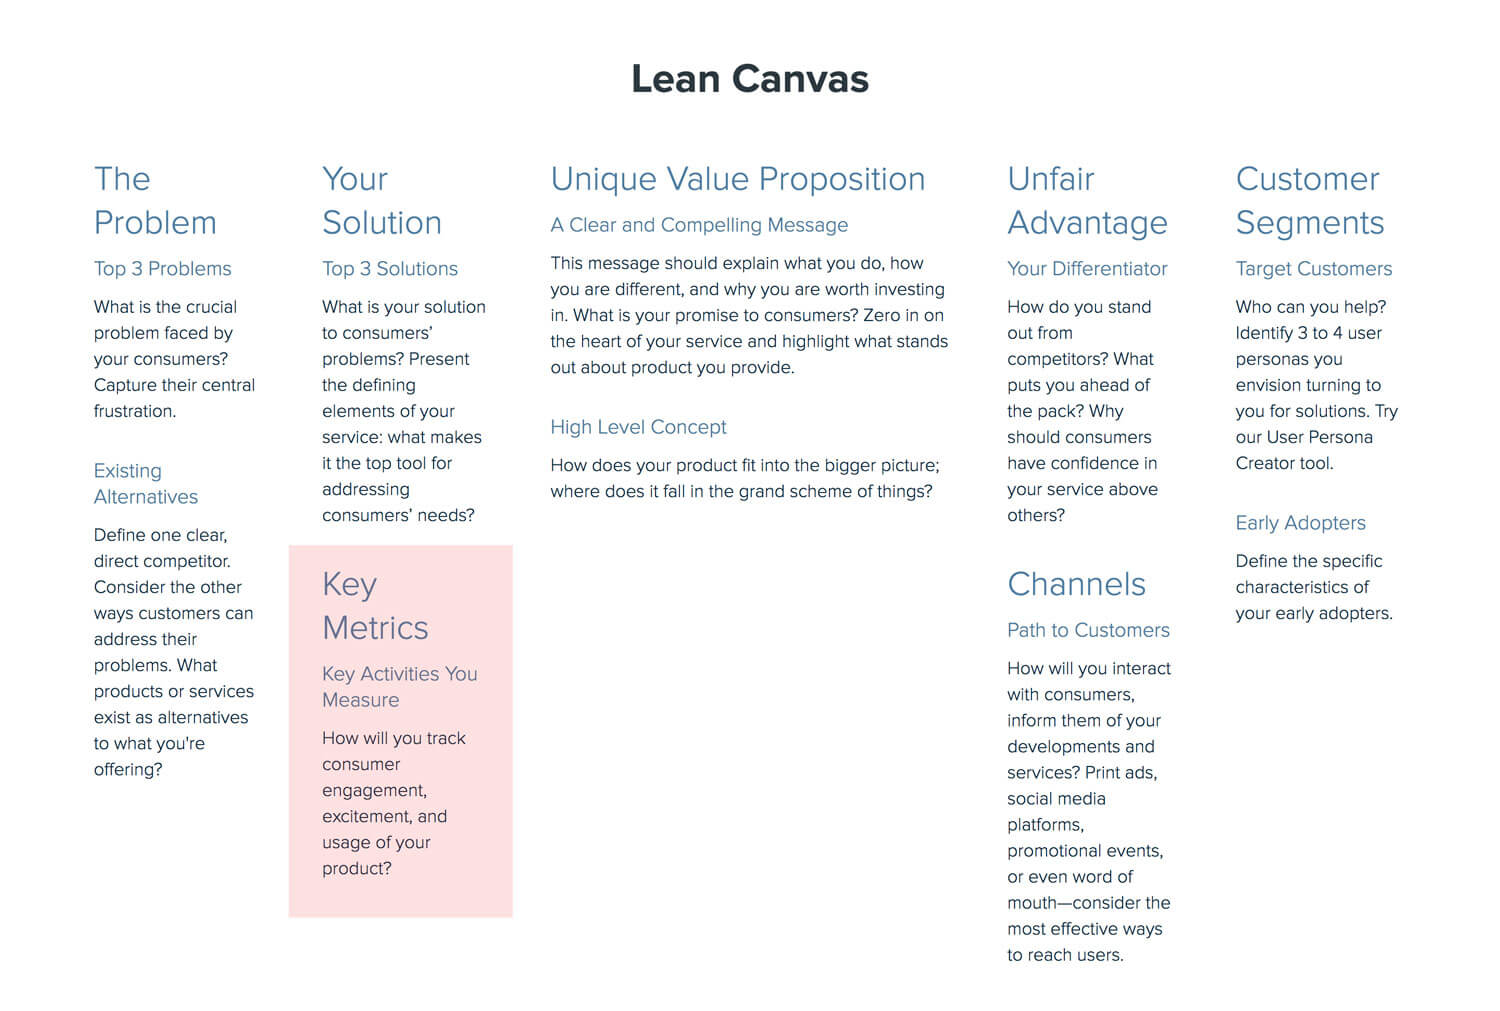 Lean Canvas: Key Metrics